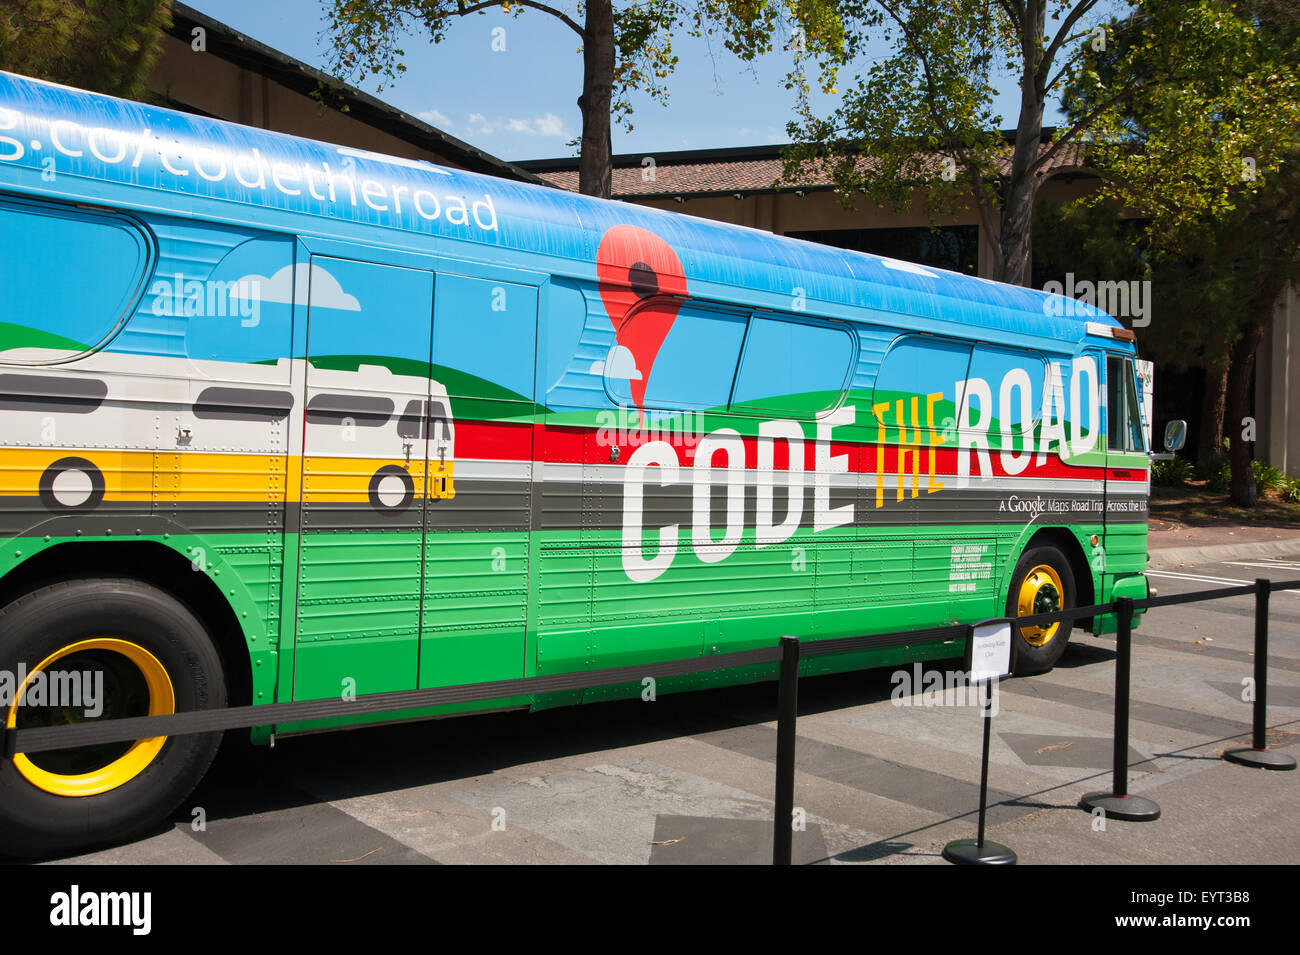 MOUNTAIN VIEW, CALIFORNIE - 1 août 2015 : le Code de Google Road bus stationné au quartier général de Google à Mountain View, Californie le Aug Banque D'Images